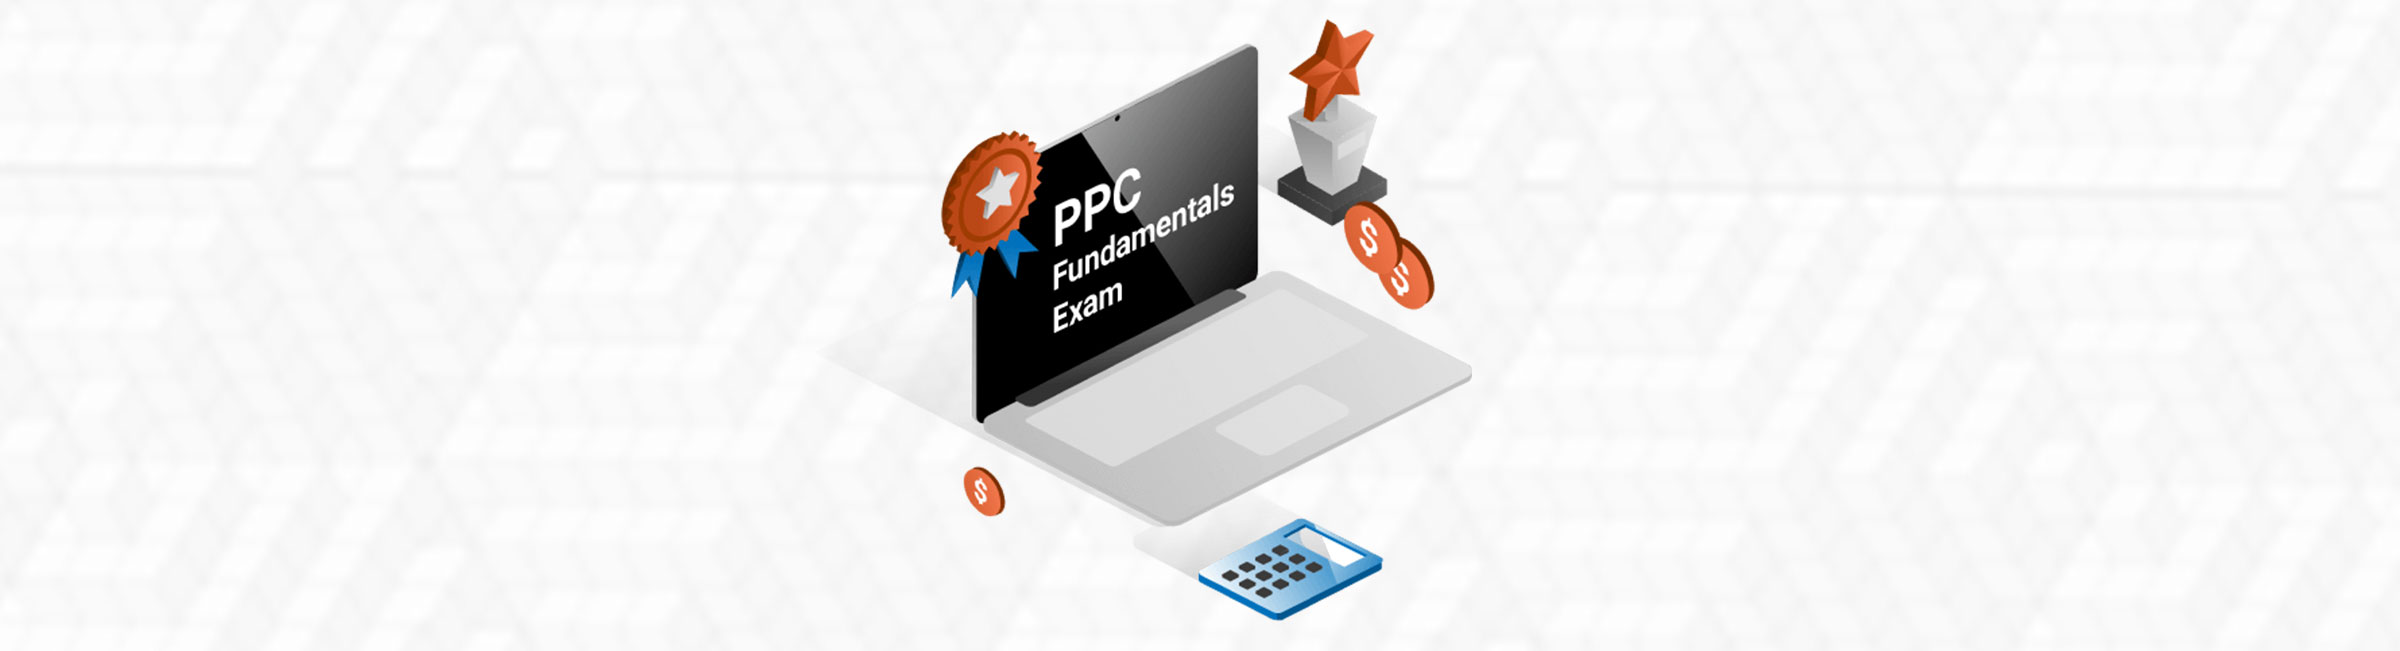 PPC Fundamentals Exam